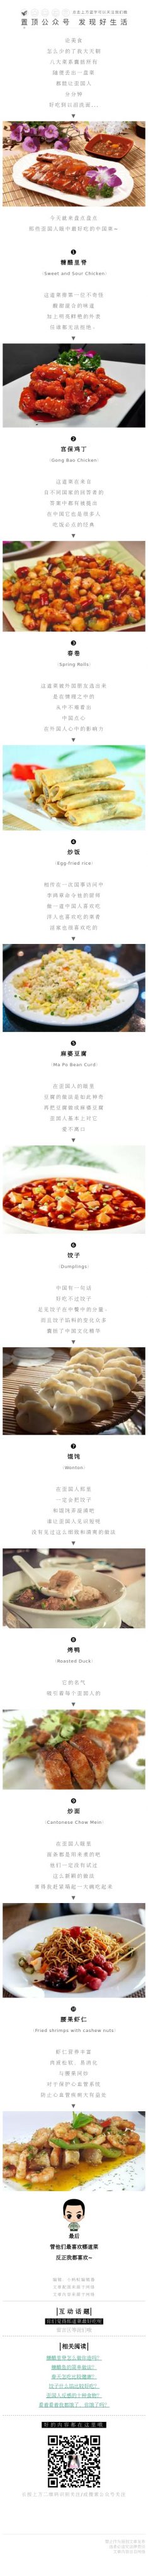 美食酒店菜系介绍中国菜排行餐厅餐饮微信模板